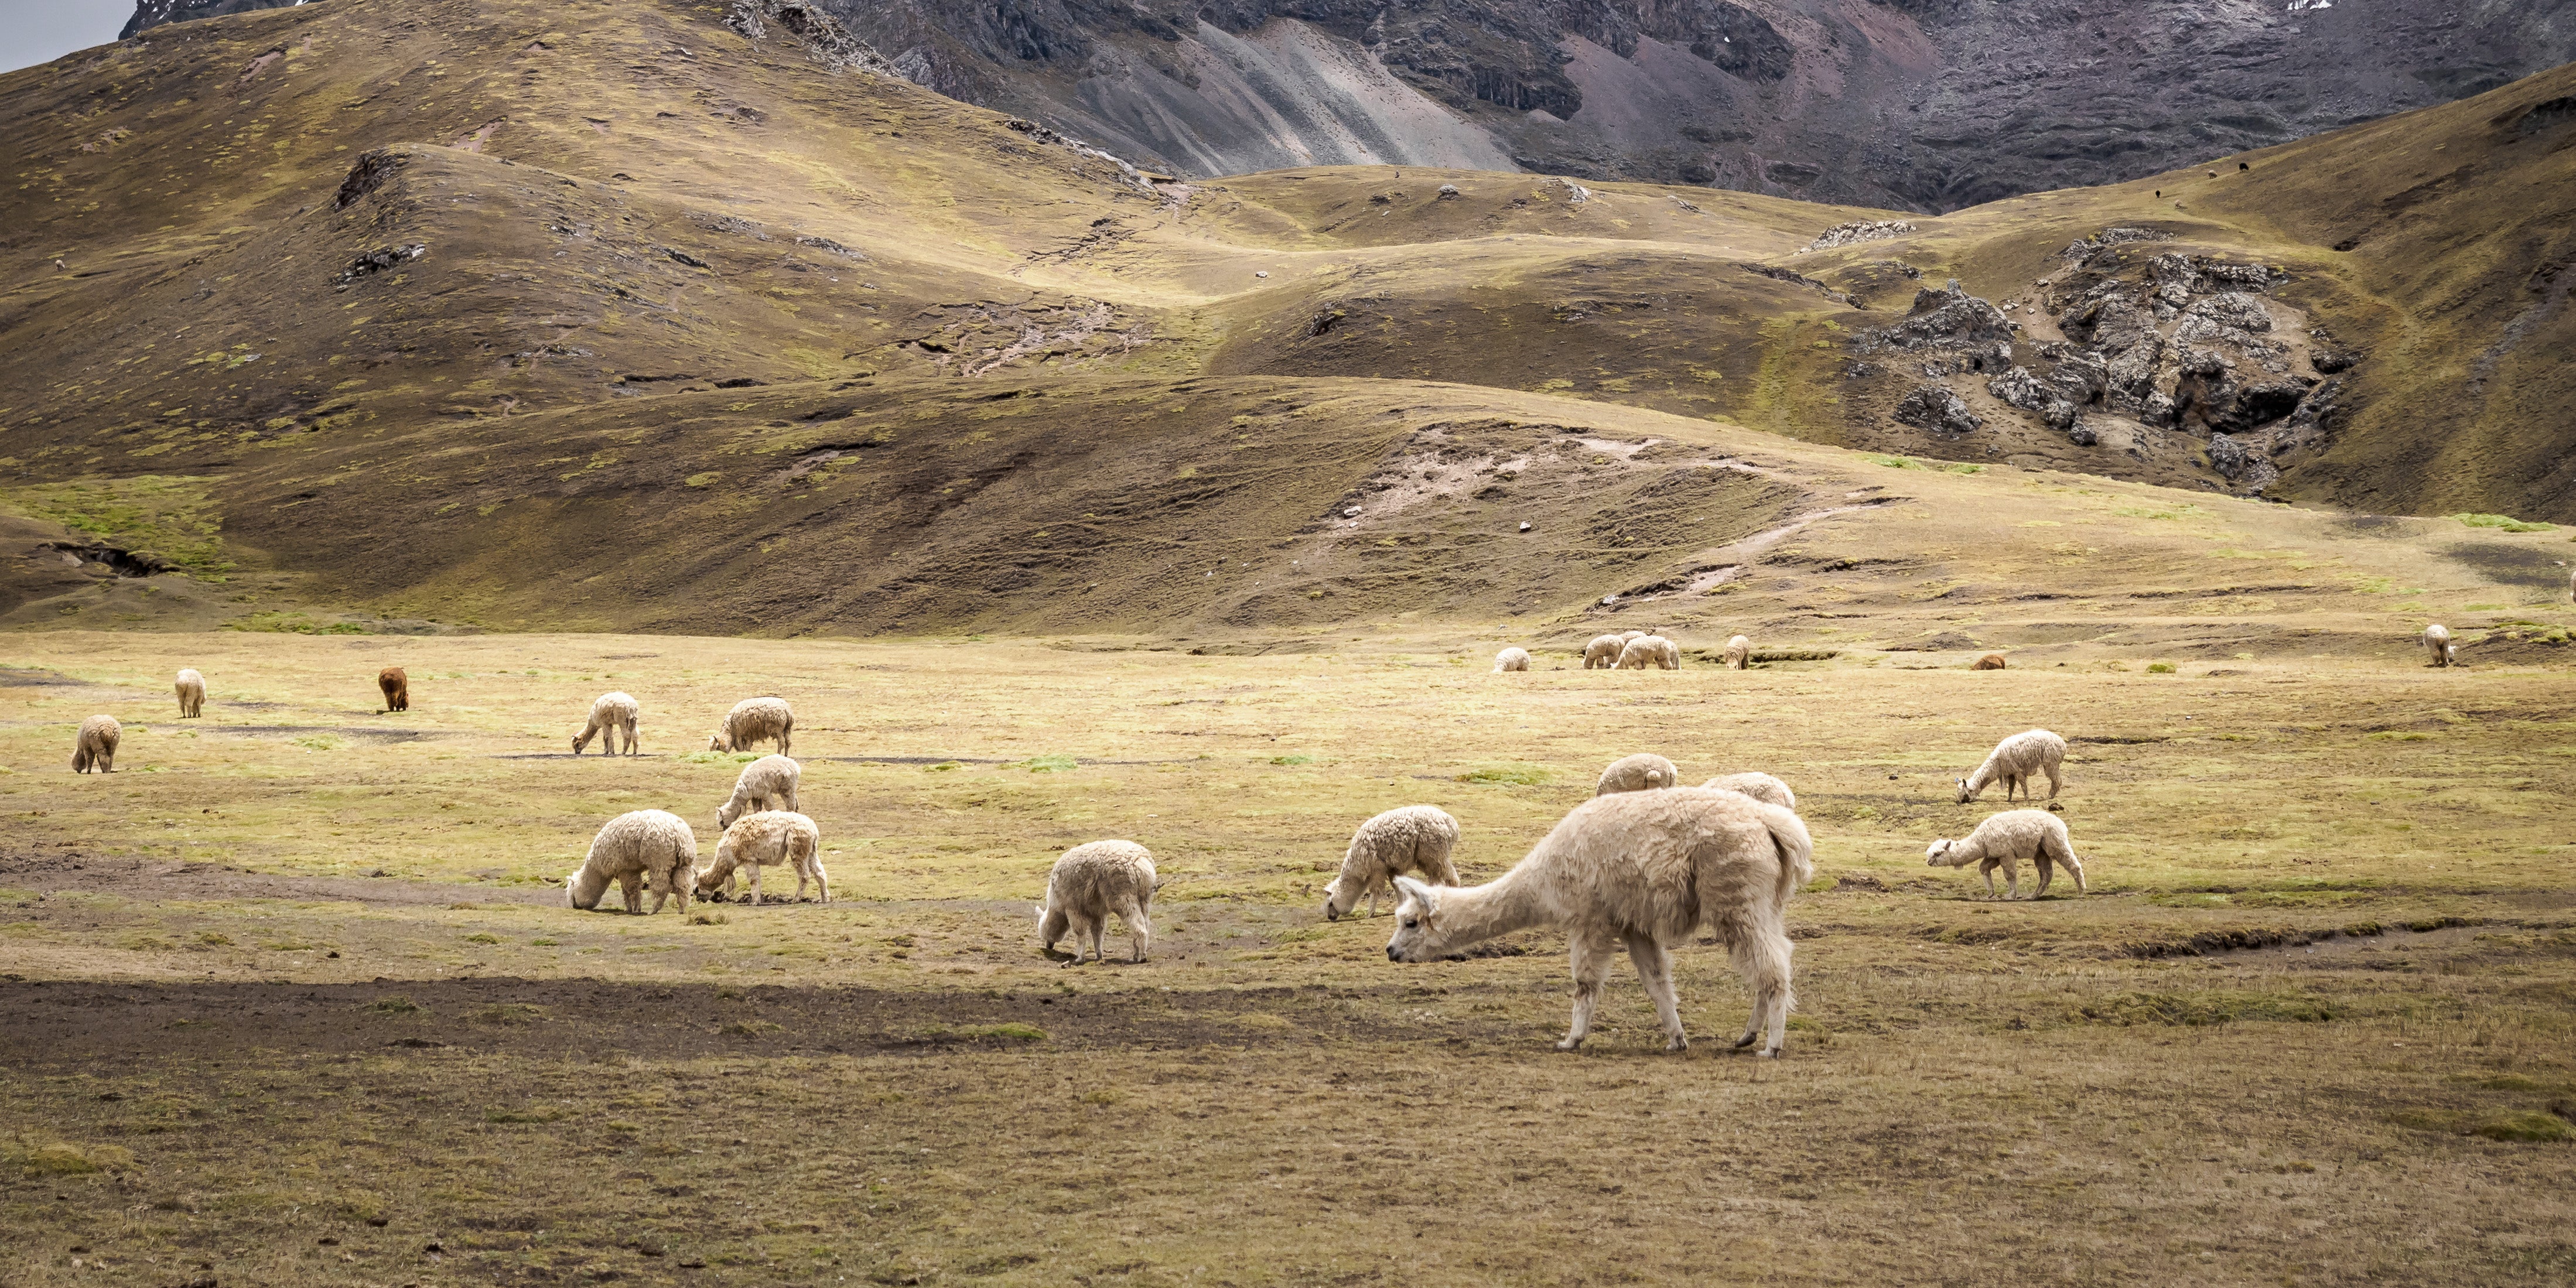 alpaca wool